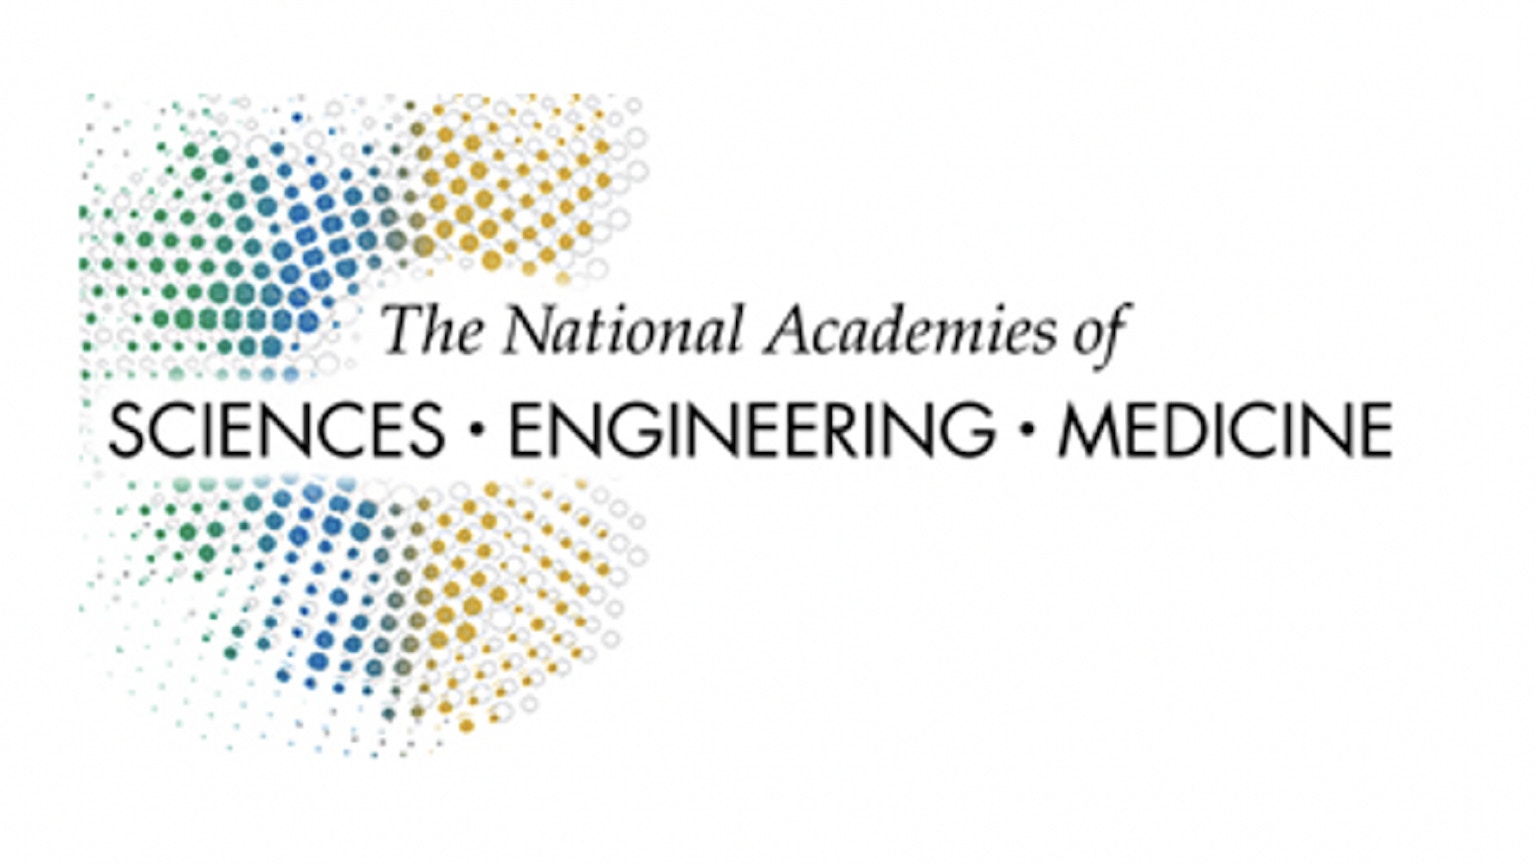 The National Academies of Sciences Engineering Medecine